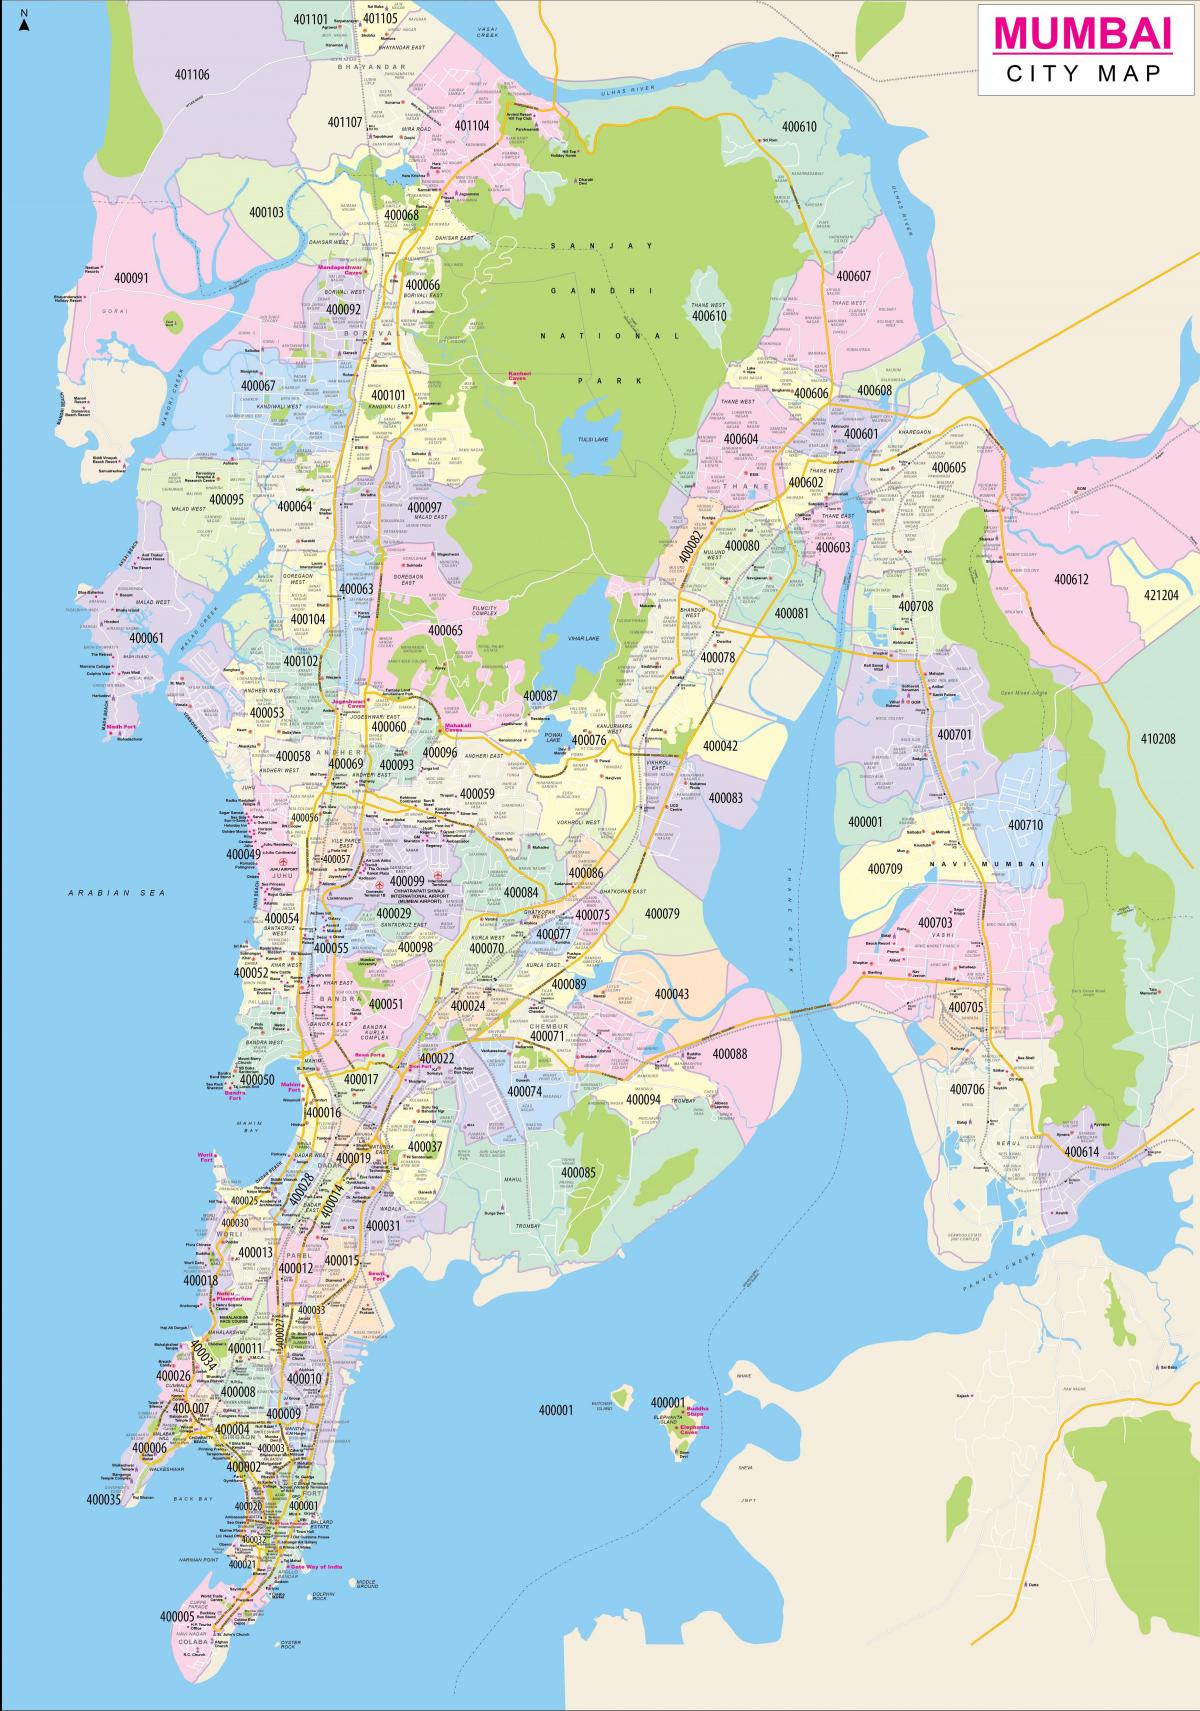 孟买 - 孟买城市地图